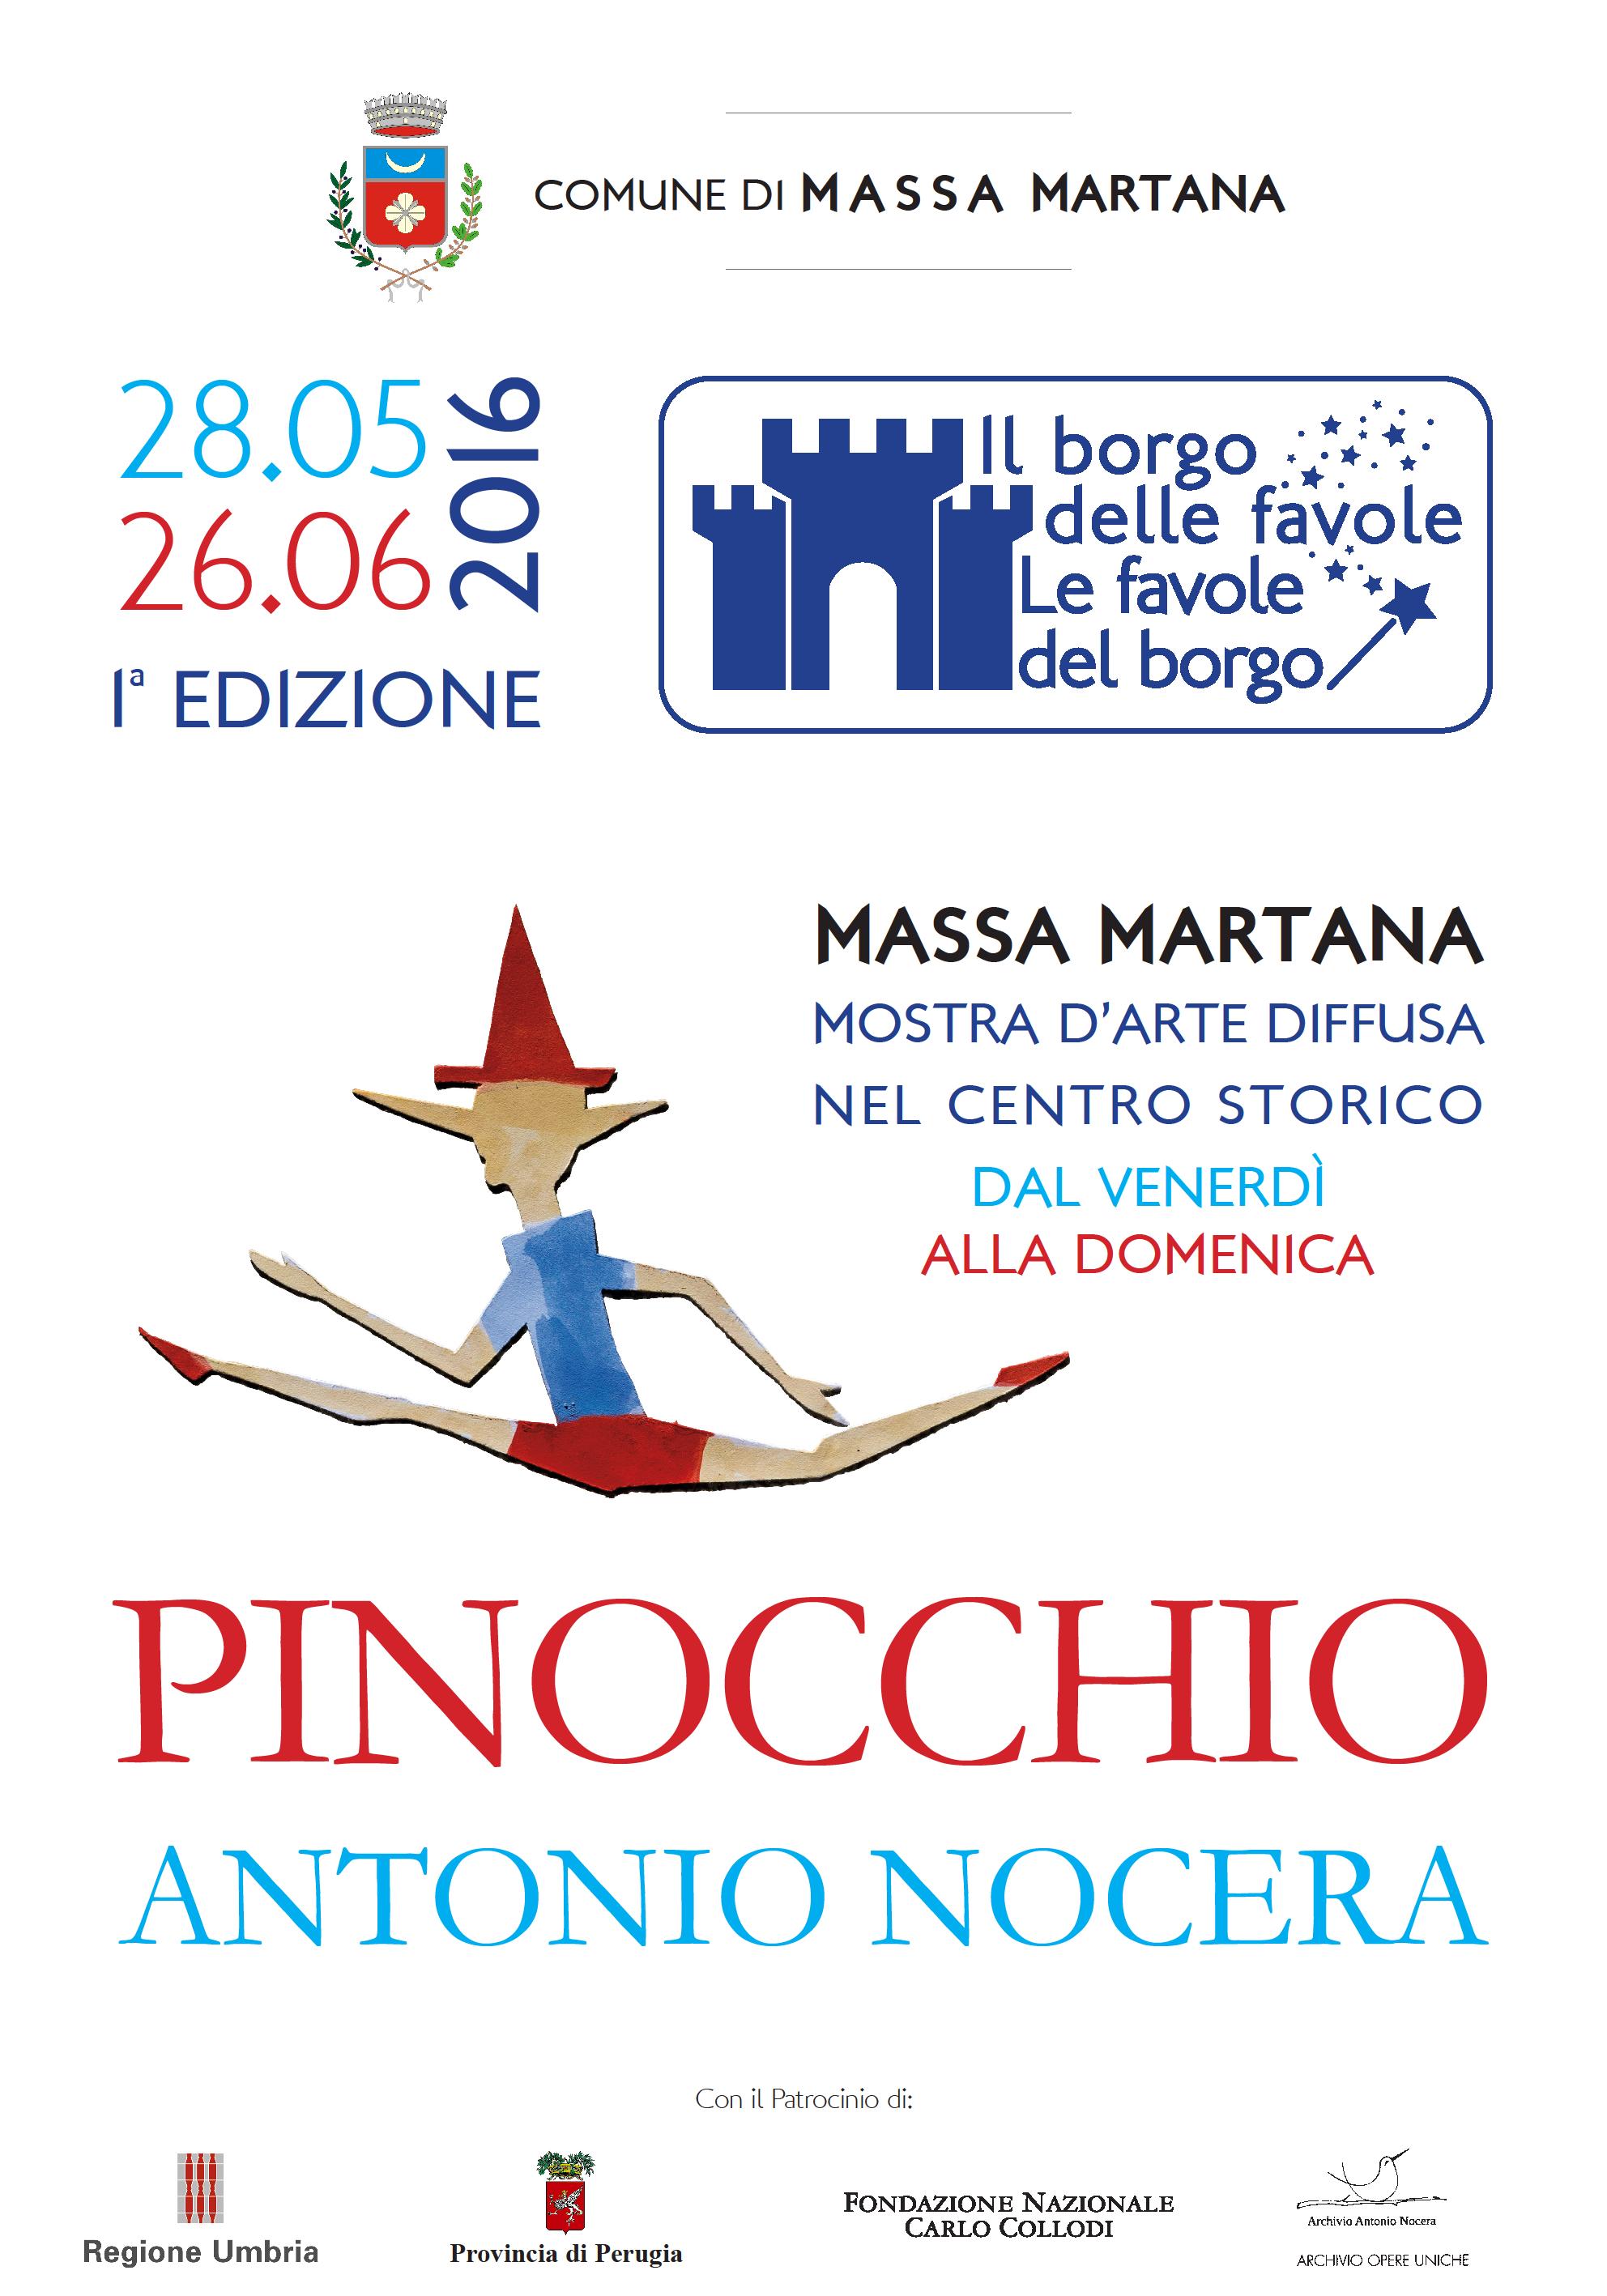 PinocchioMassaMartana